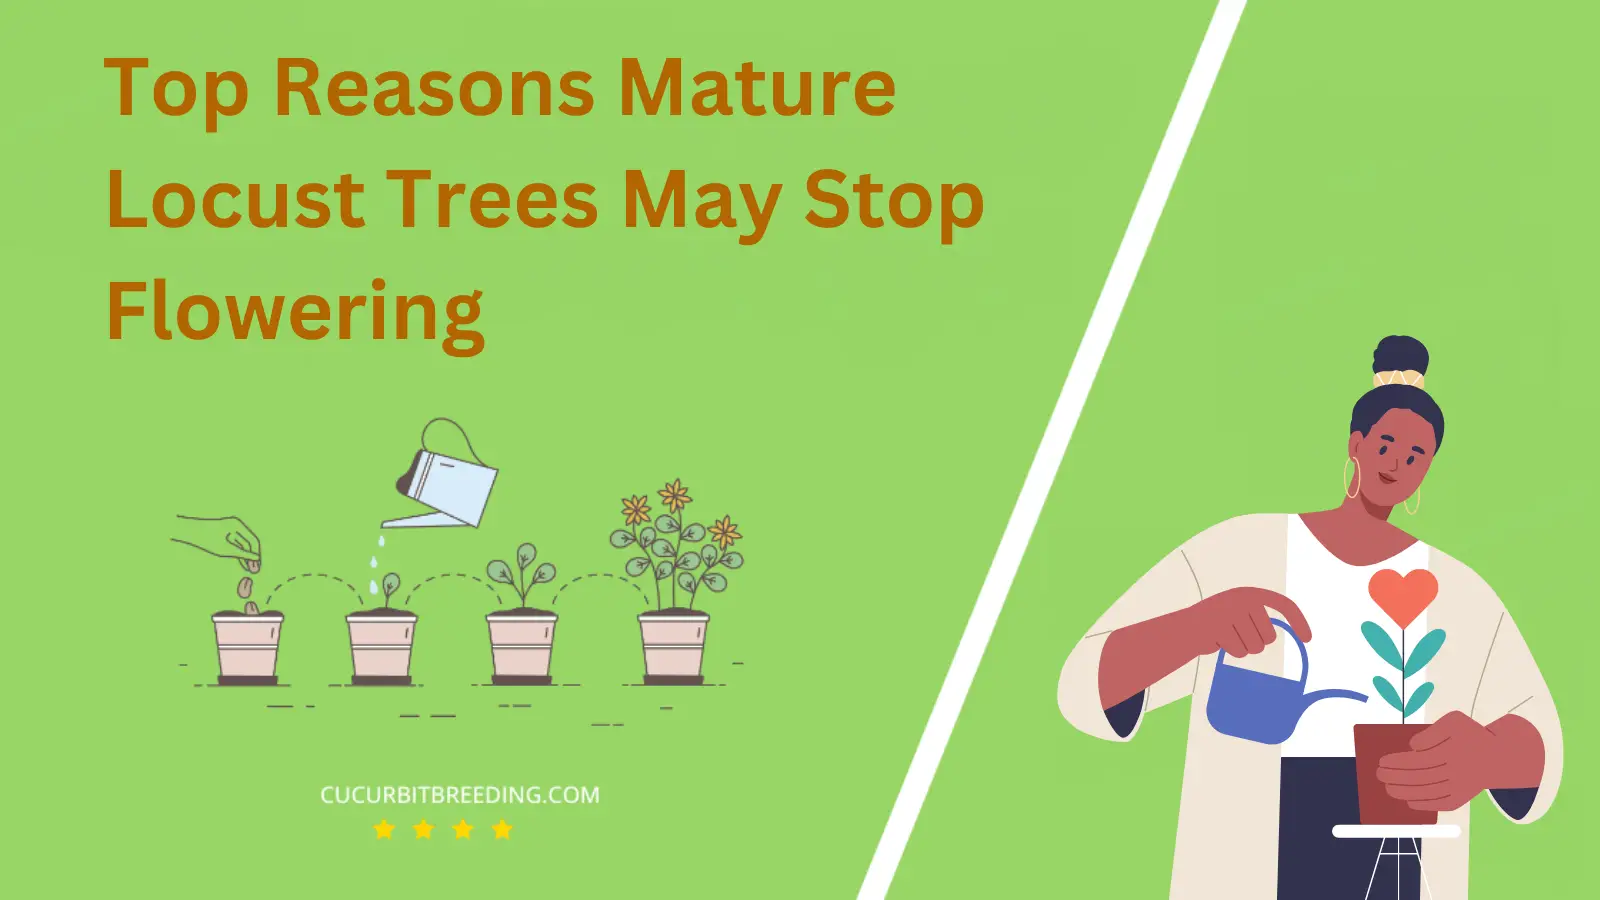 Top Reasons Mature Locust Trees May Stop Flowering